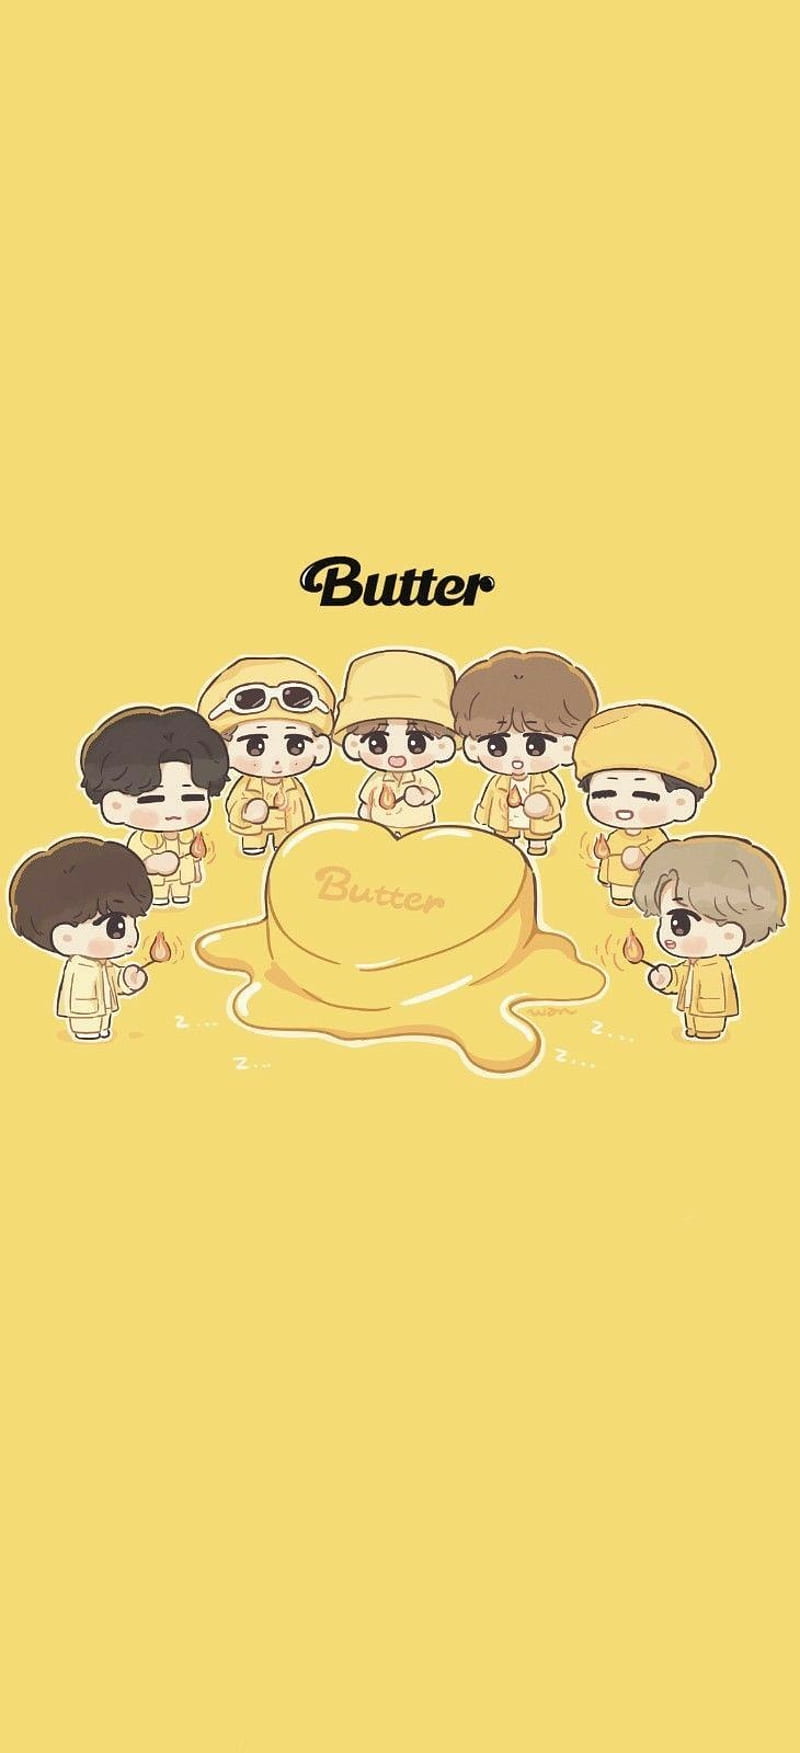 Bts butter, 2021 bts, cute bts, HD phone wallpaper | Peakpx